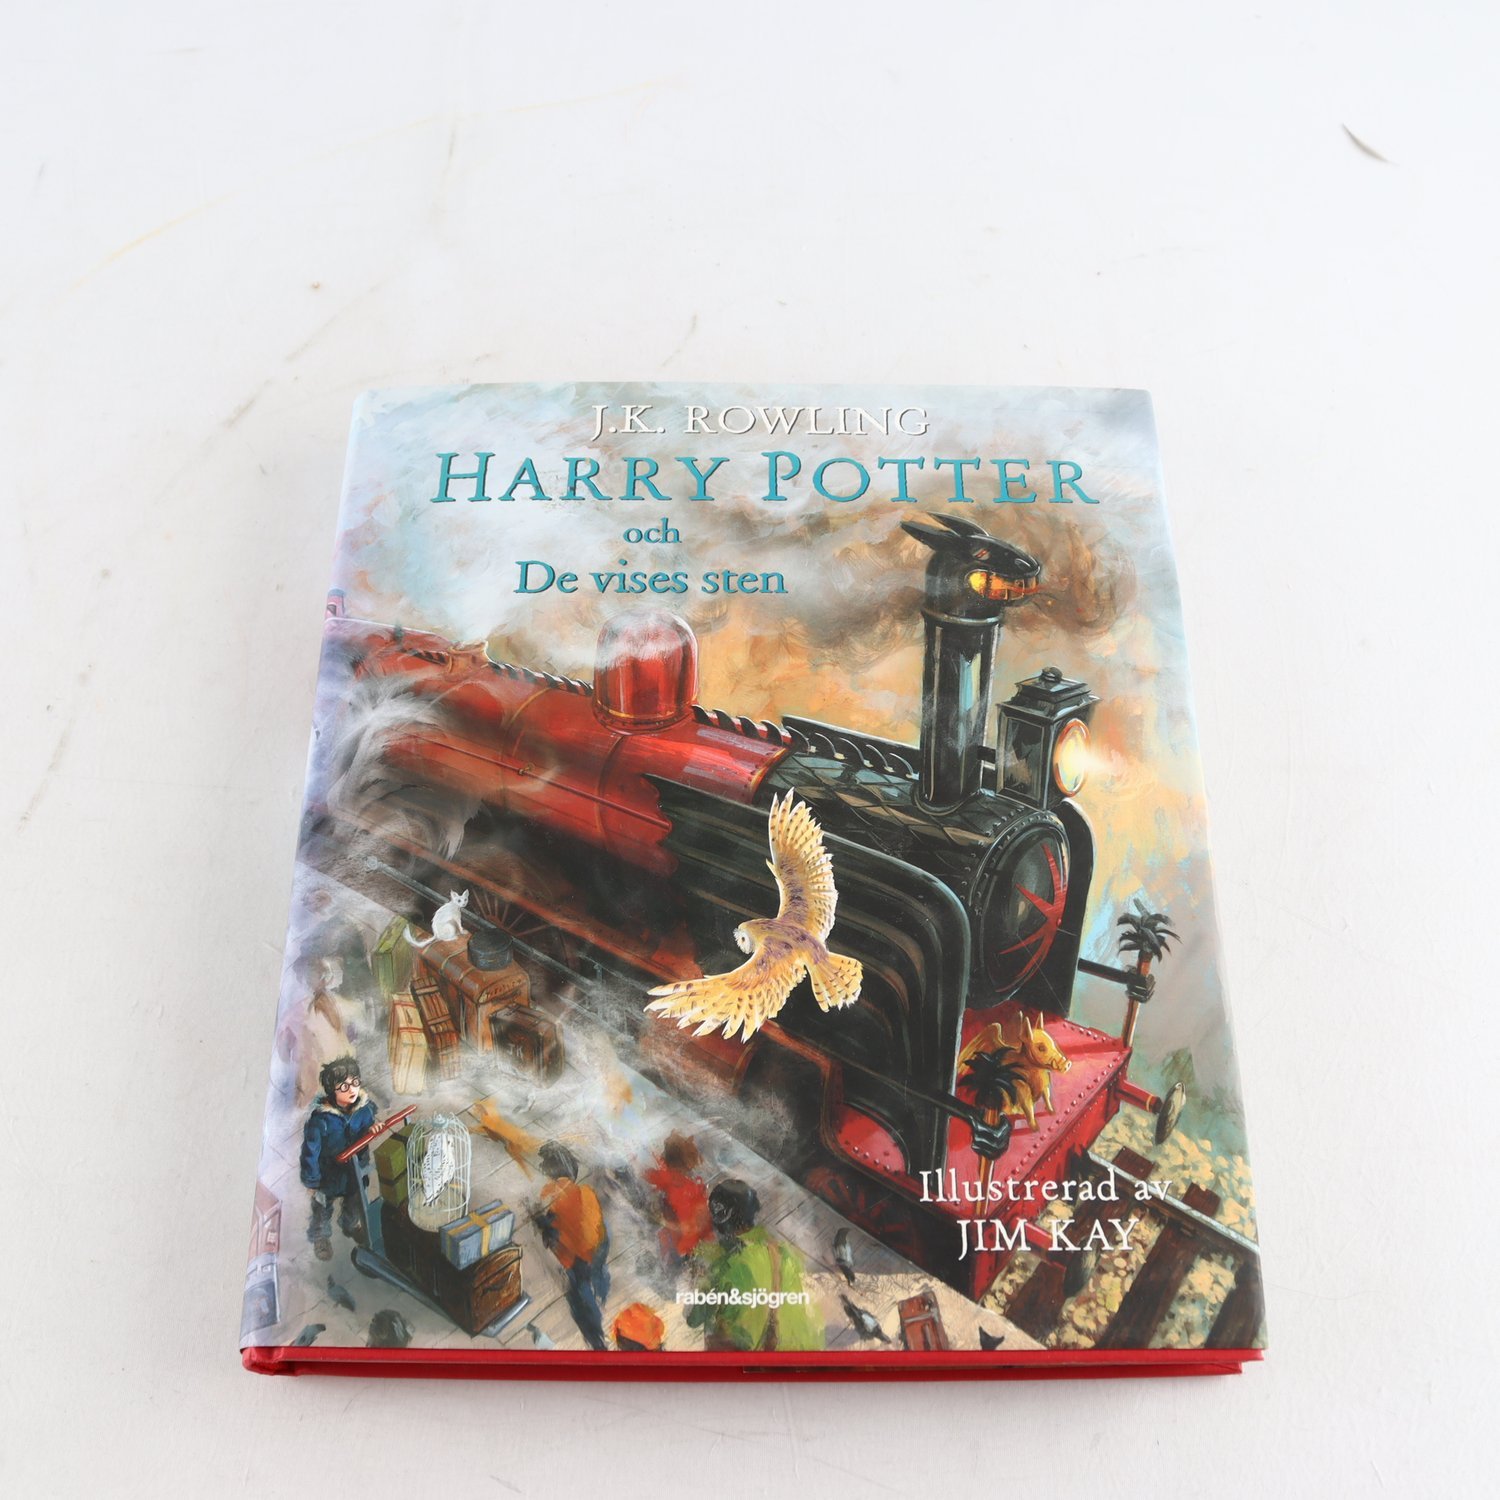 J.K. Rowling, Harry Potter och De vises sten, ill. Jim Kay & Neil Packer